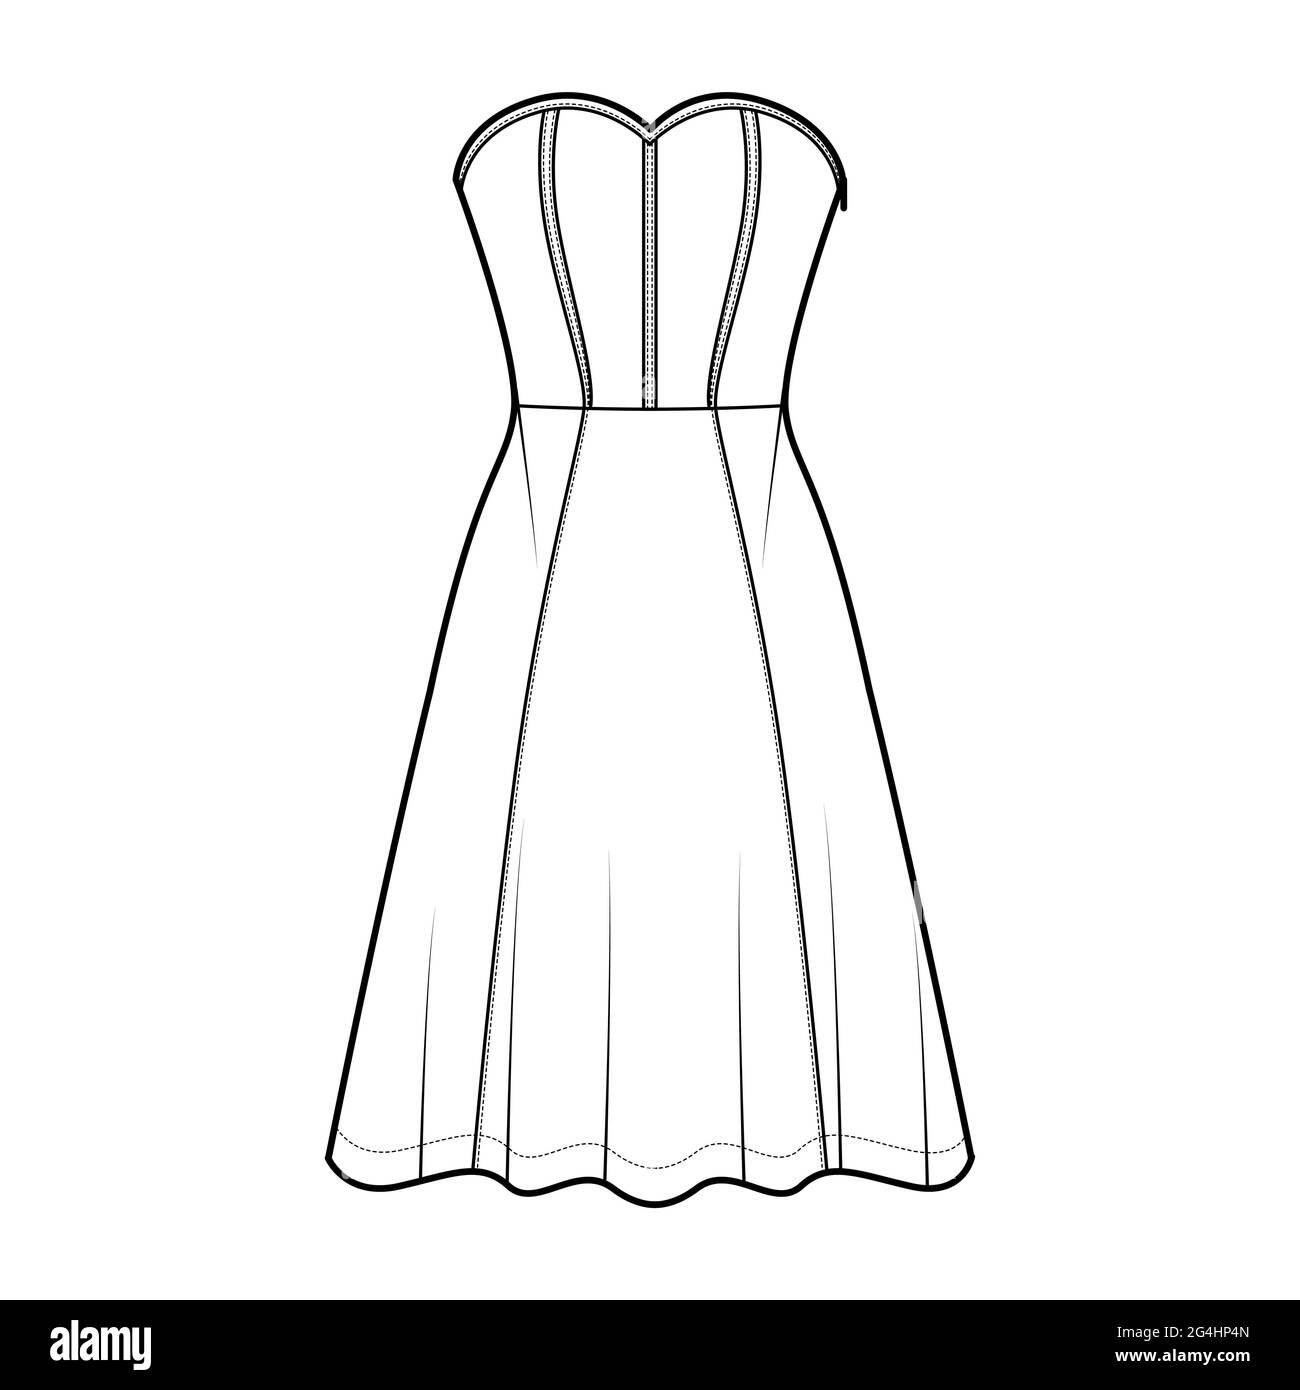 Robe corset technique mode illustration avec sans manches, sans bretelles, corps ajusté, longueur genou jupe circulaire. Vêtements plats sur le devant, coloris blanc Illustration de Vecteur